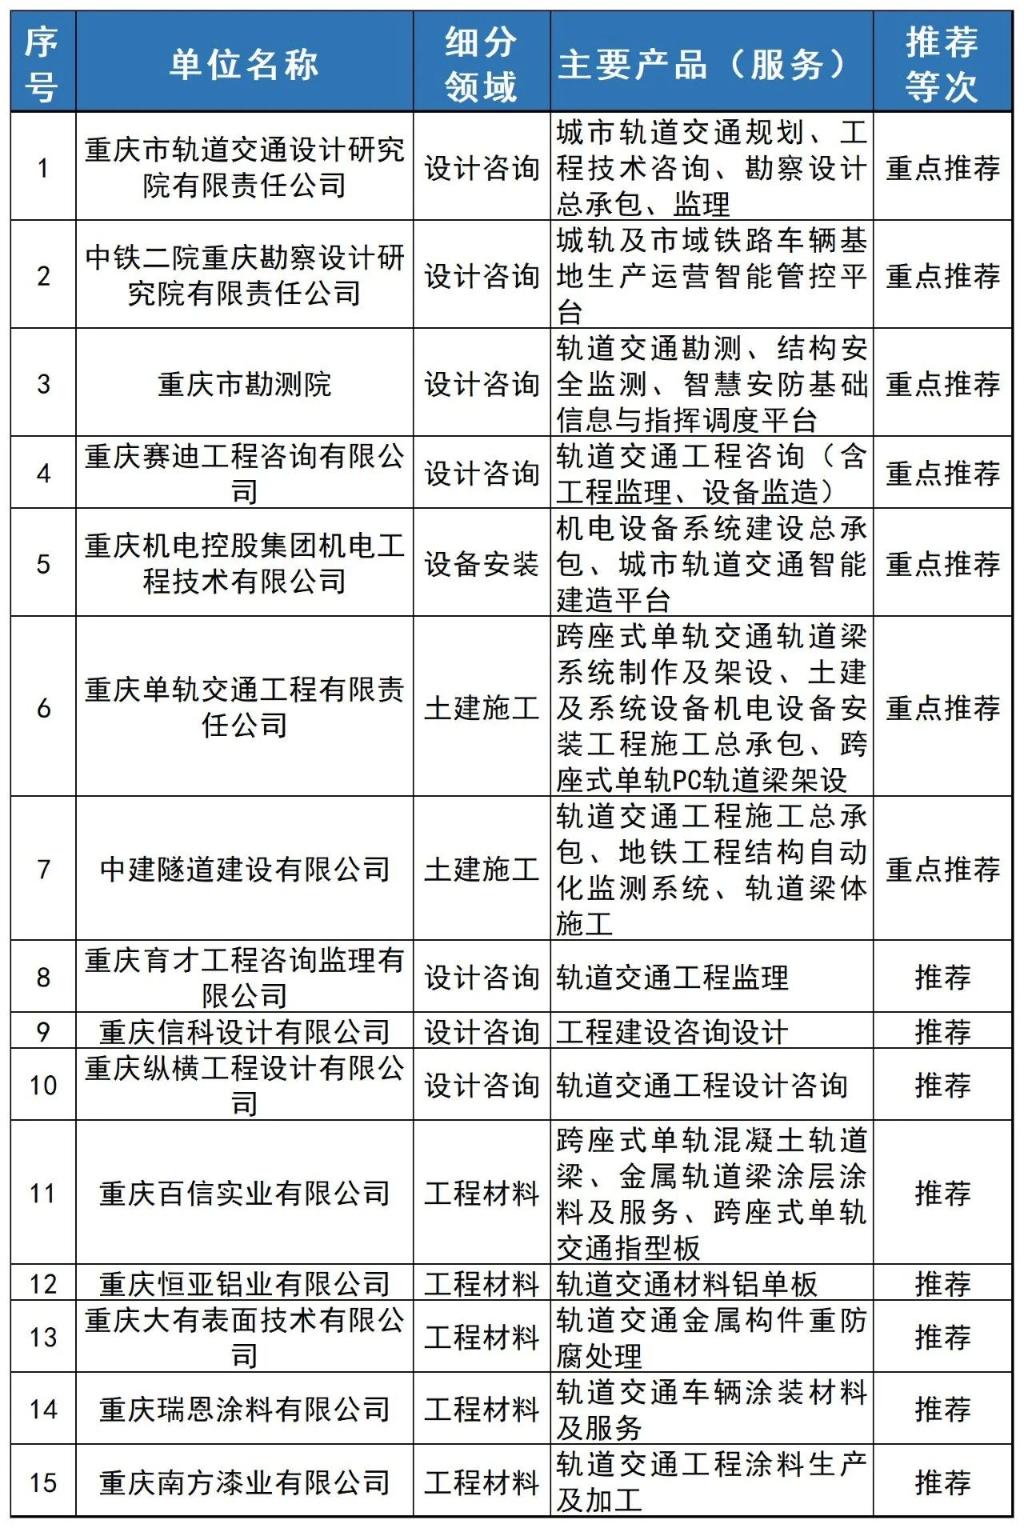 工程建设类重点企业15家。图源：重庆市经济信息委公众号